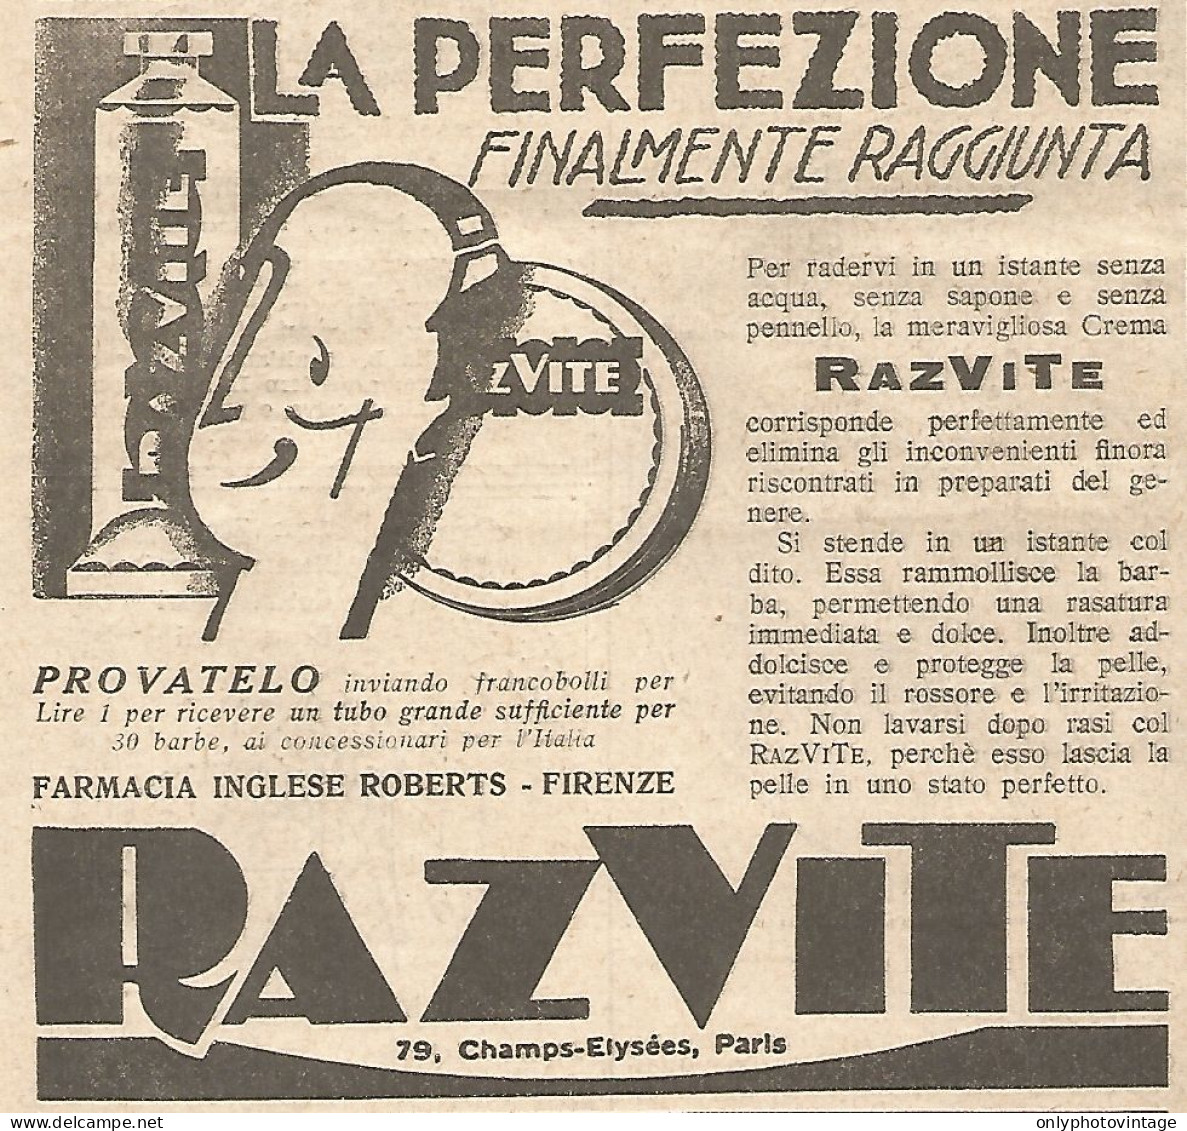 RAZVITE - La Perfezione Finalmente... - Pubblicitï¿½ Del 1932 - Vintage Ad - Advertising